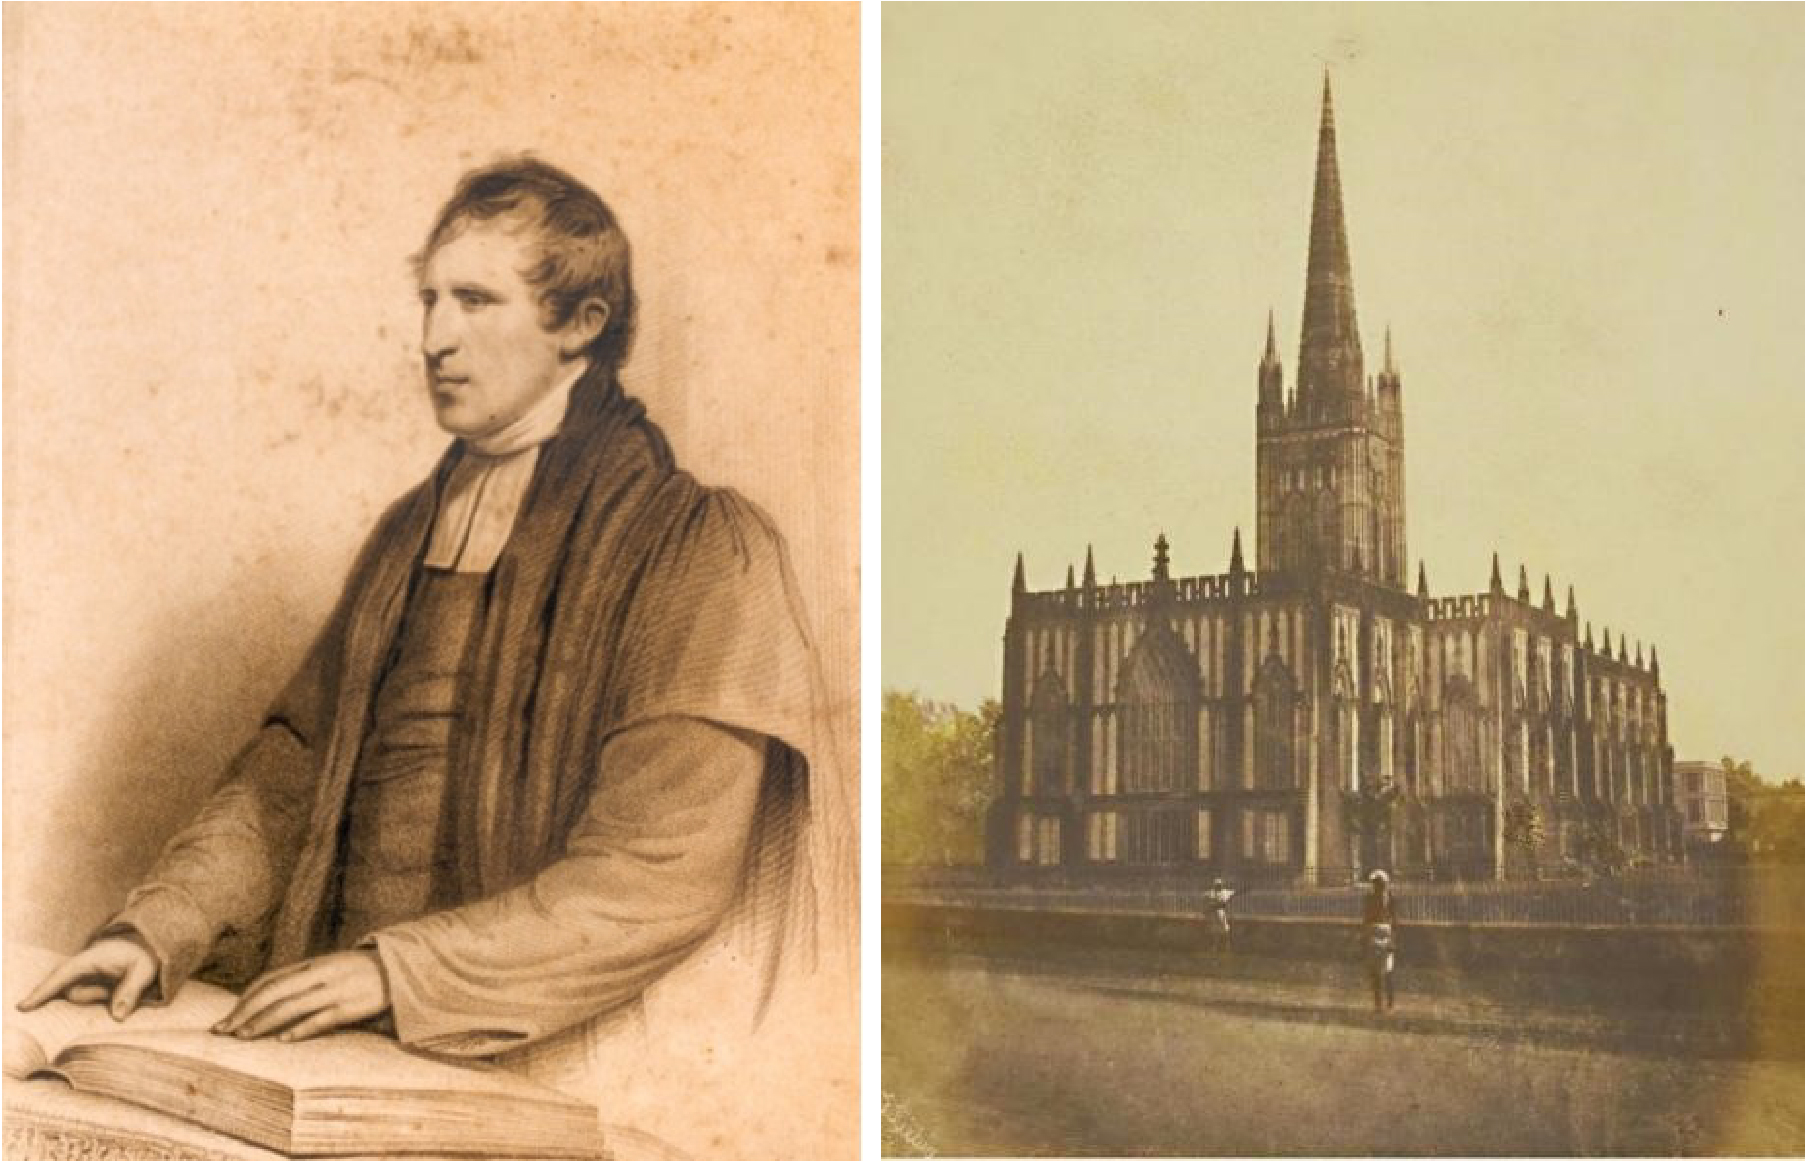 威尔森主教画像(图像采自其族谱)/ 1851年拍摄的加尔各答圣保罗大教堂(St. Paul’s Cathedral Kolkata,1847 年落成)(大英图书馆藏老照片)